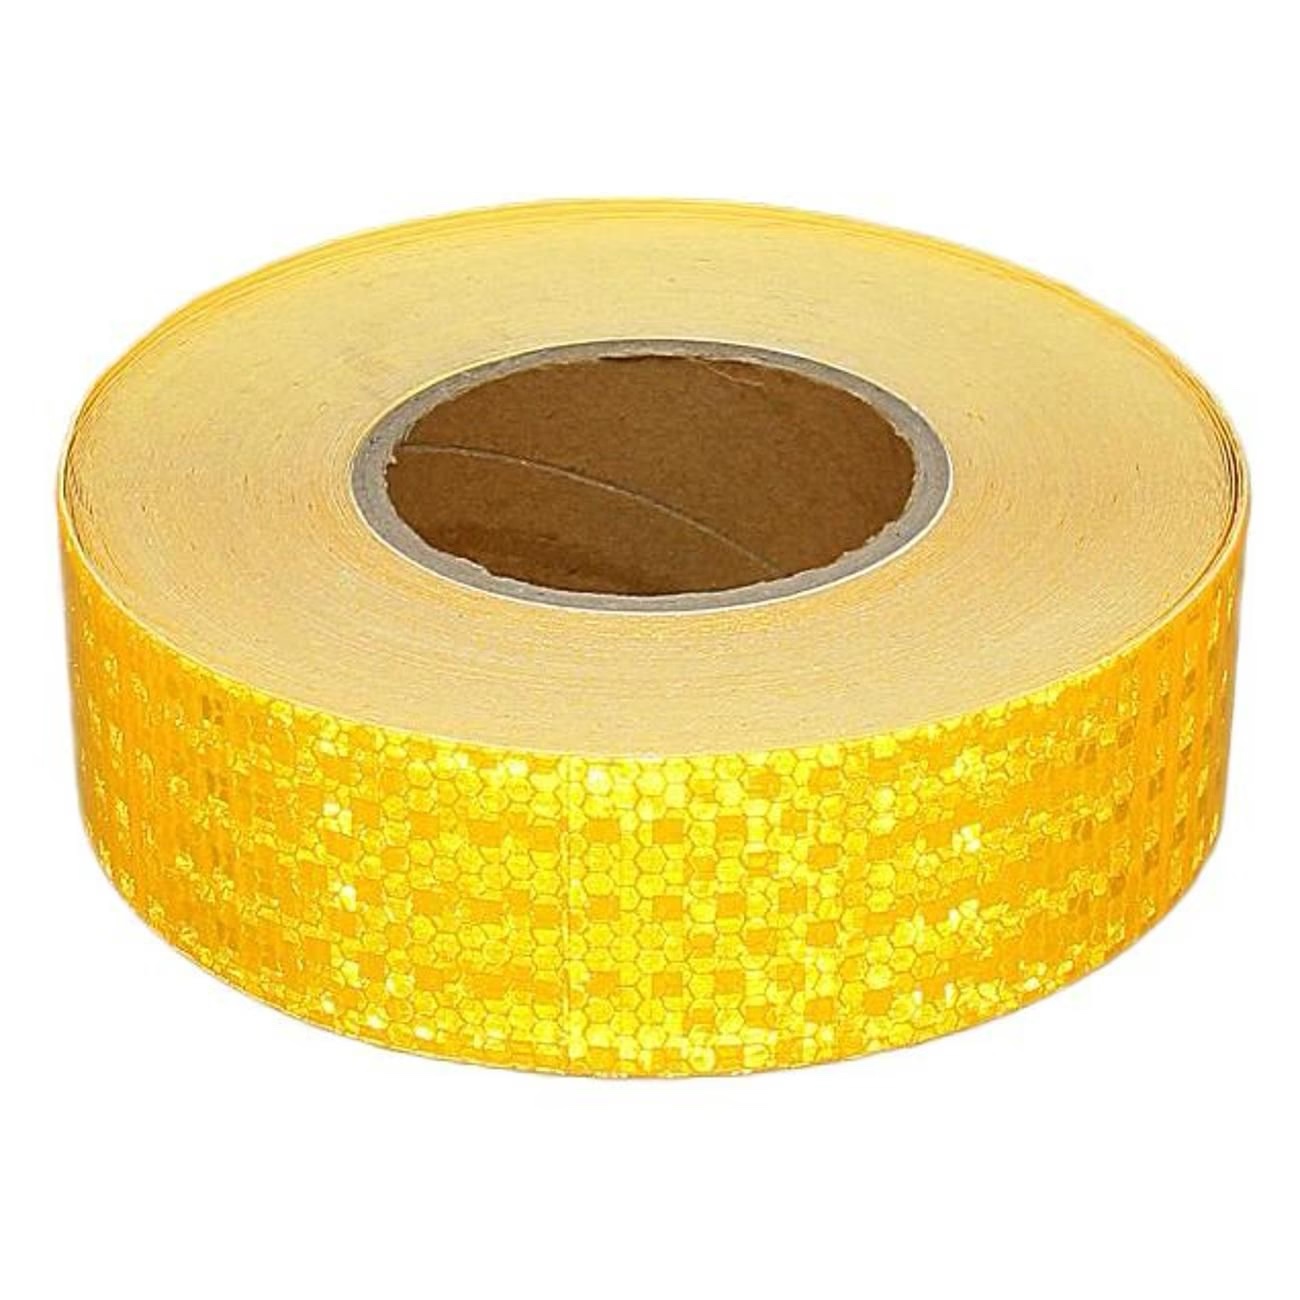 Светоотражающая самоклеящаяся лента СИМАЛЕНД желтая, 5 см х 45 м 1404122 светоотражающая лента наклейка 2 5 см 1 ± 0 1 м белый